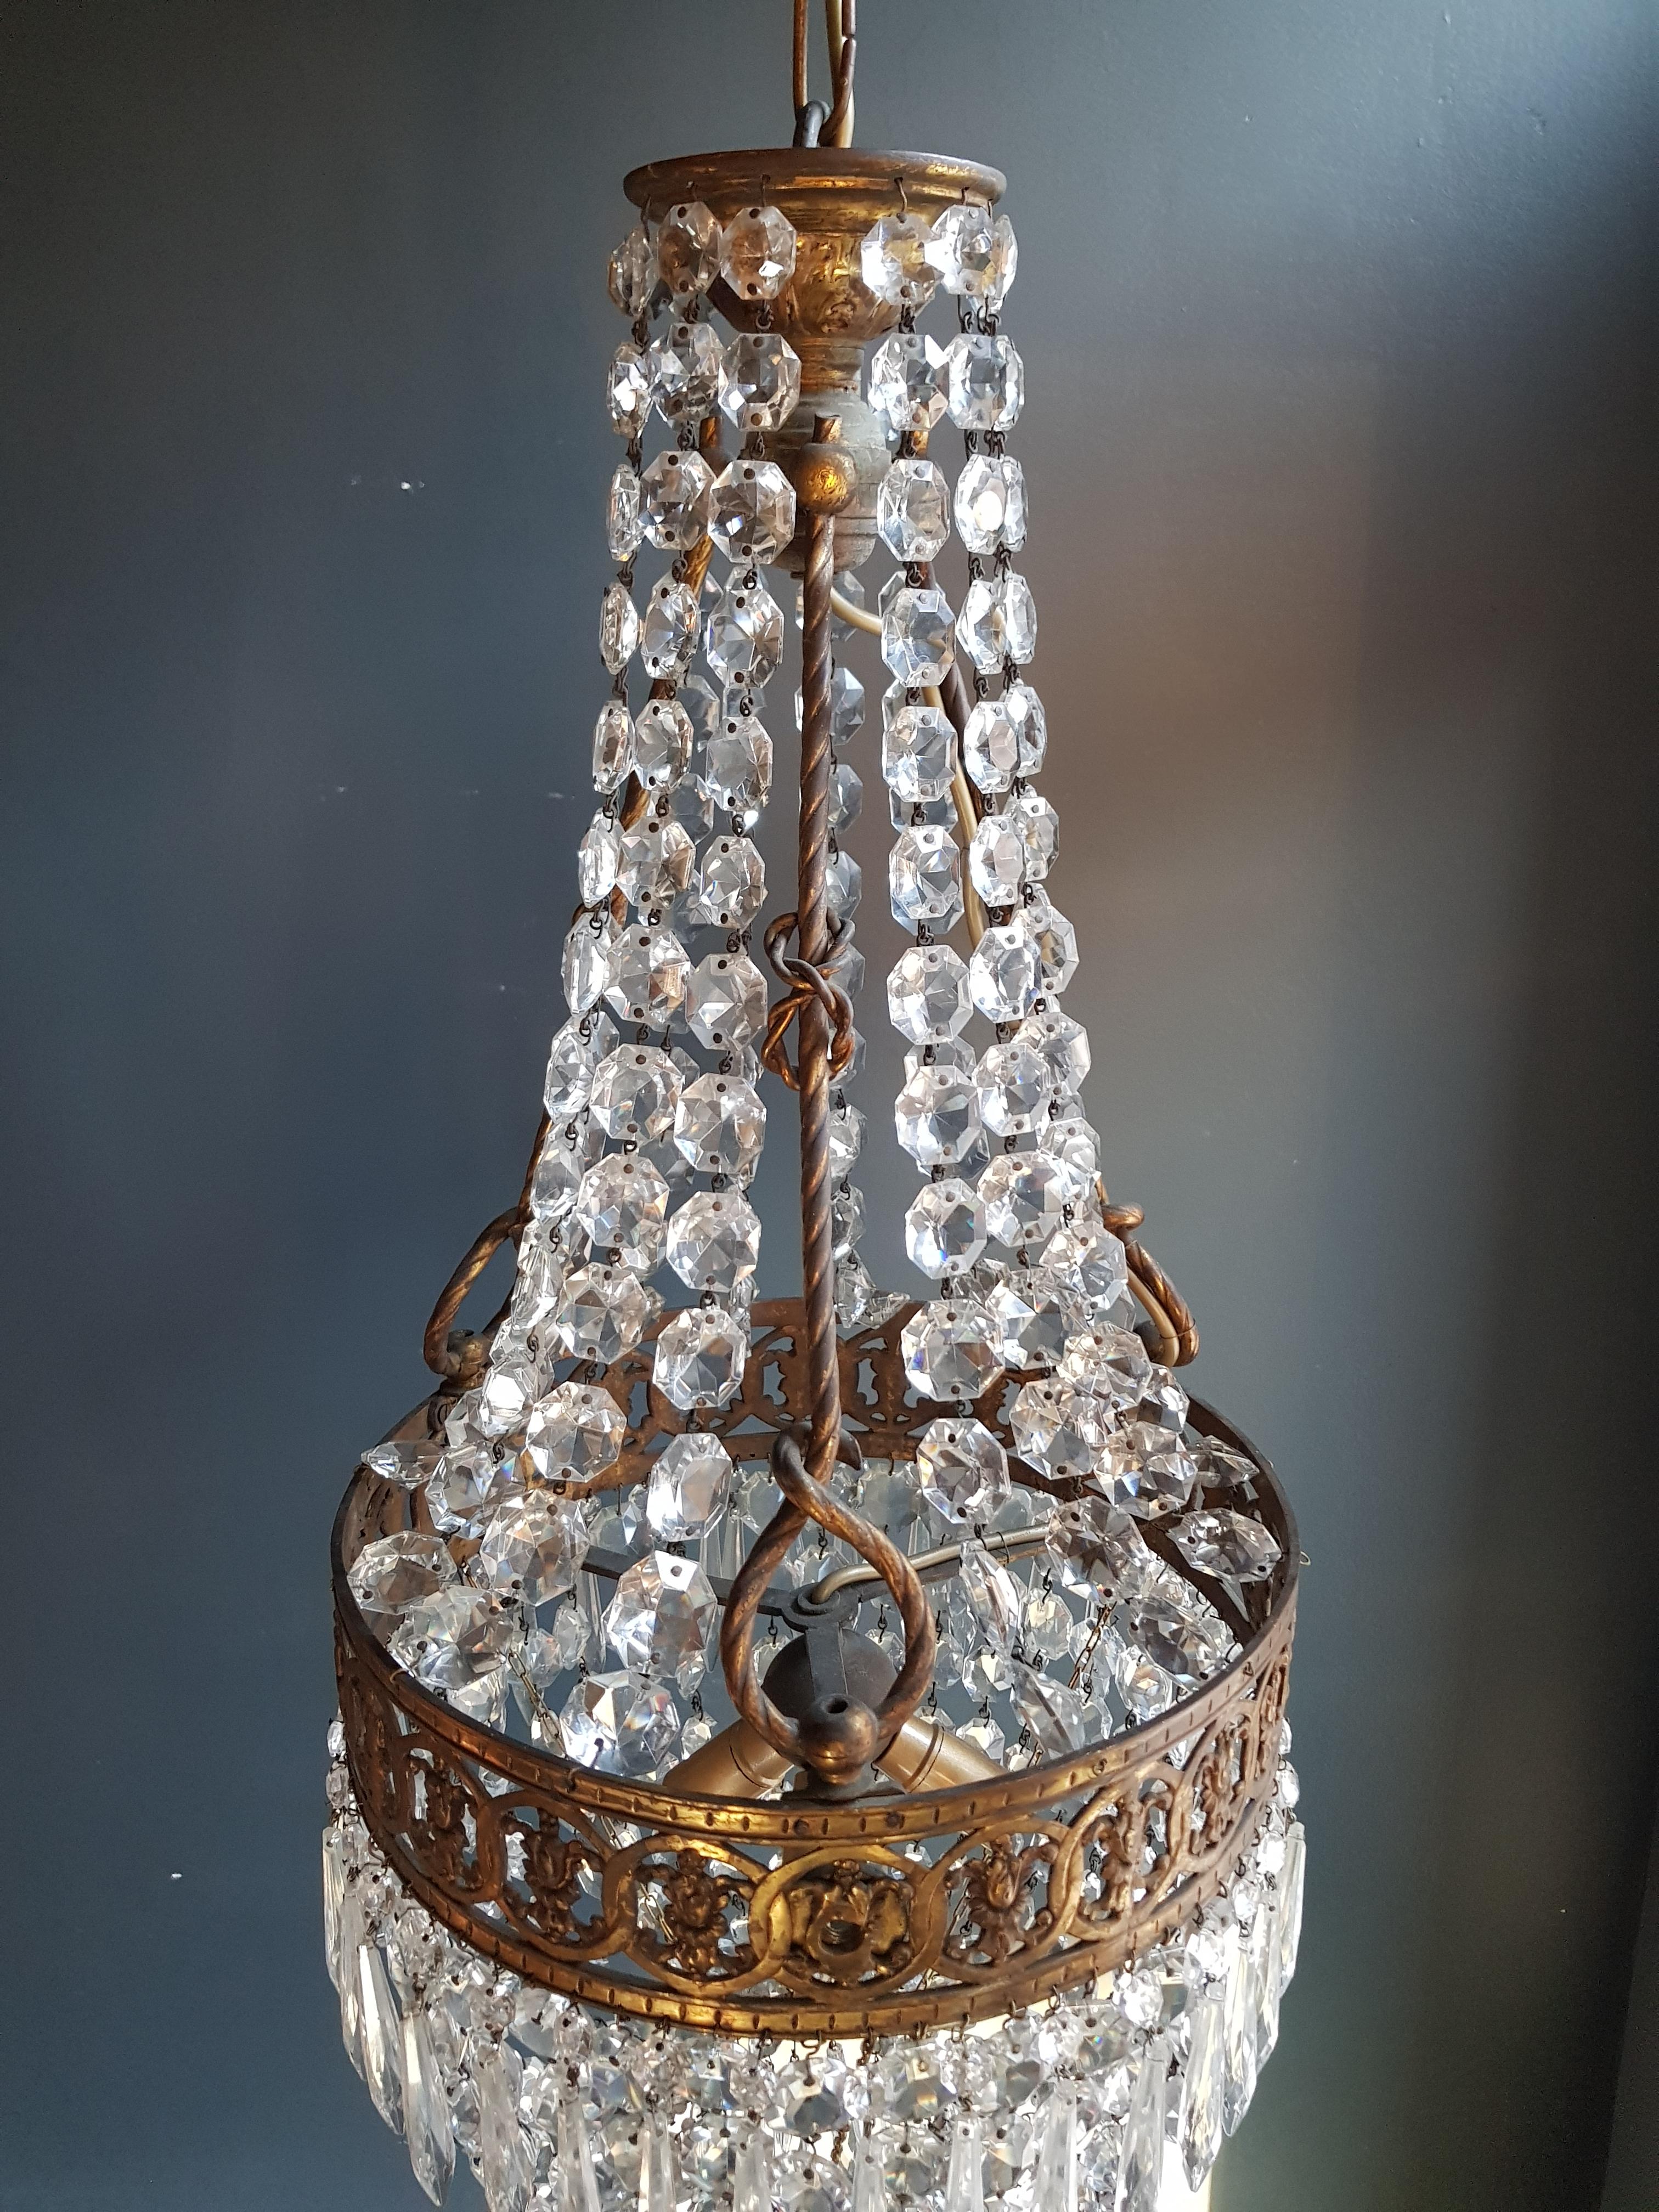 European Basket Chandelier Brass Empire Crystal Lustre Ceiling Antique Art Nouveau